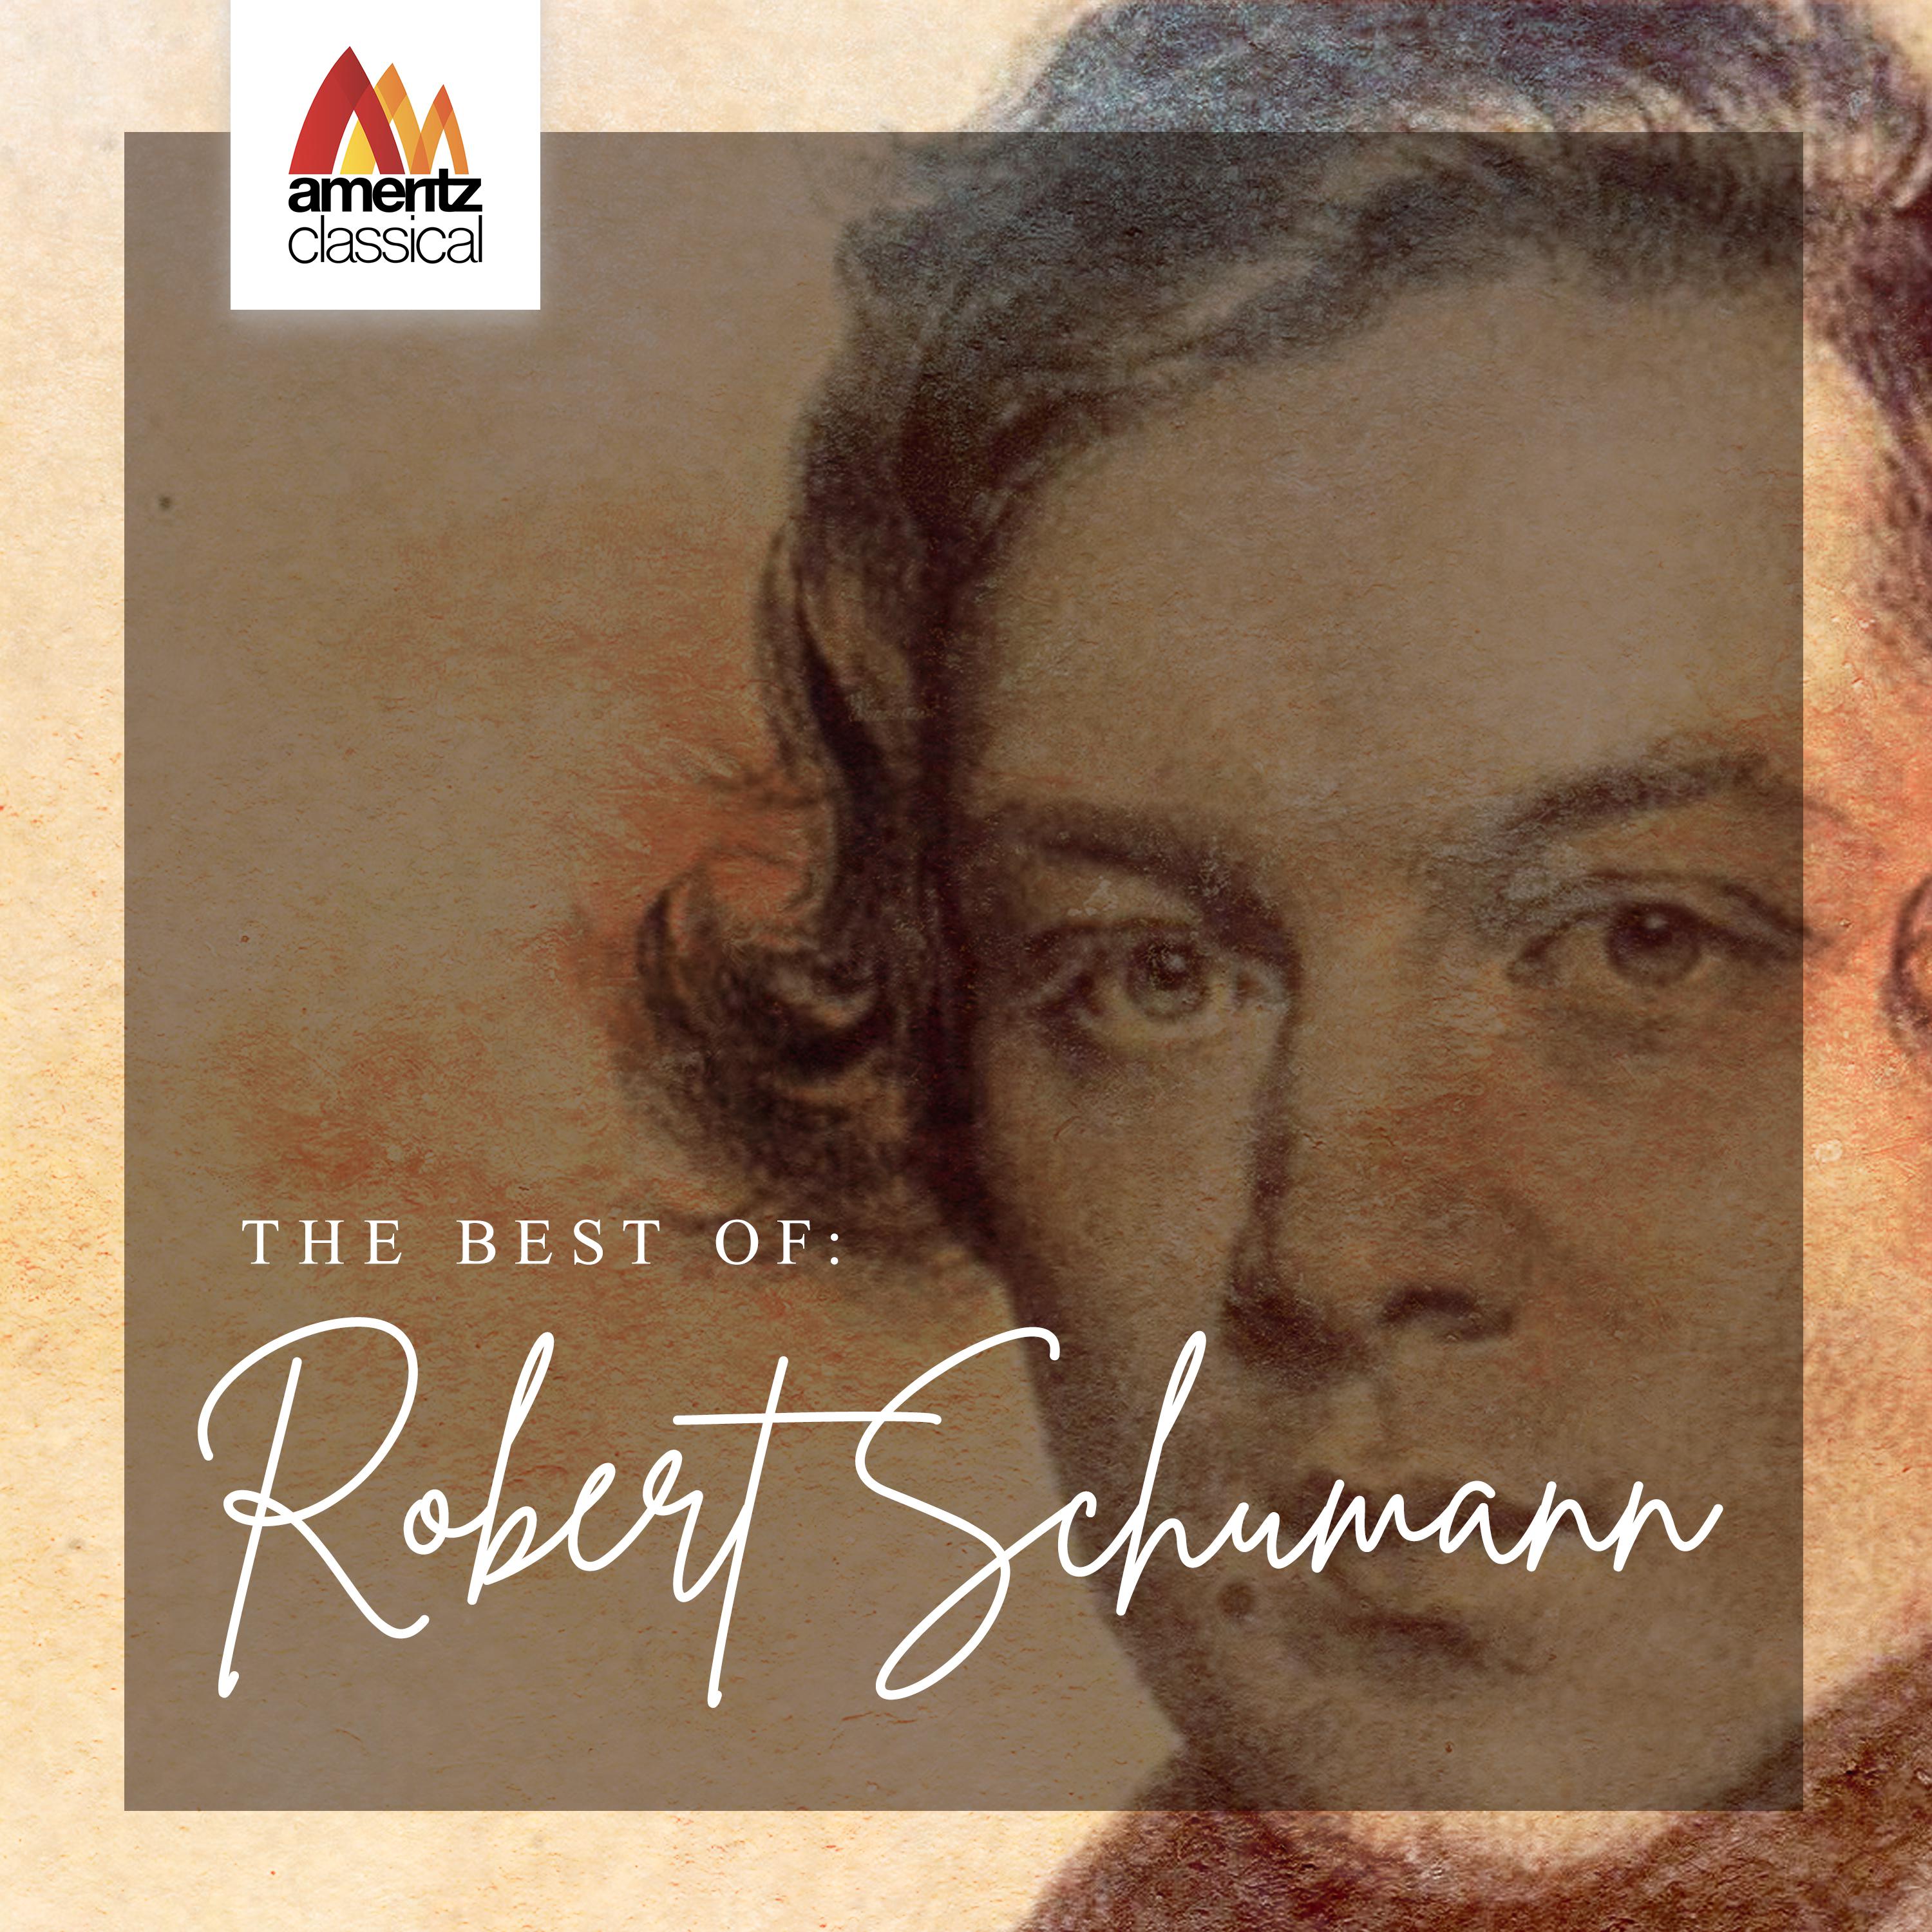 The Best of: Robert Schumann